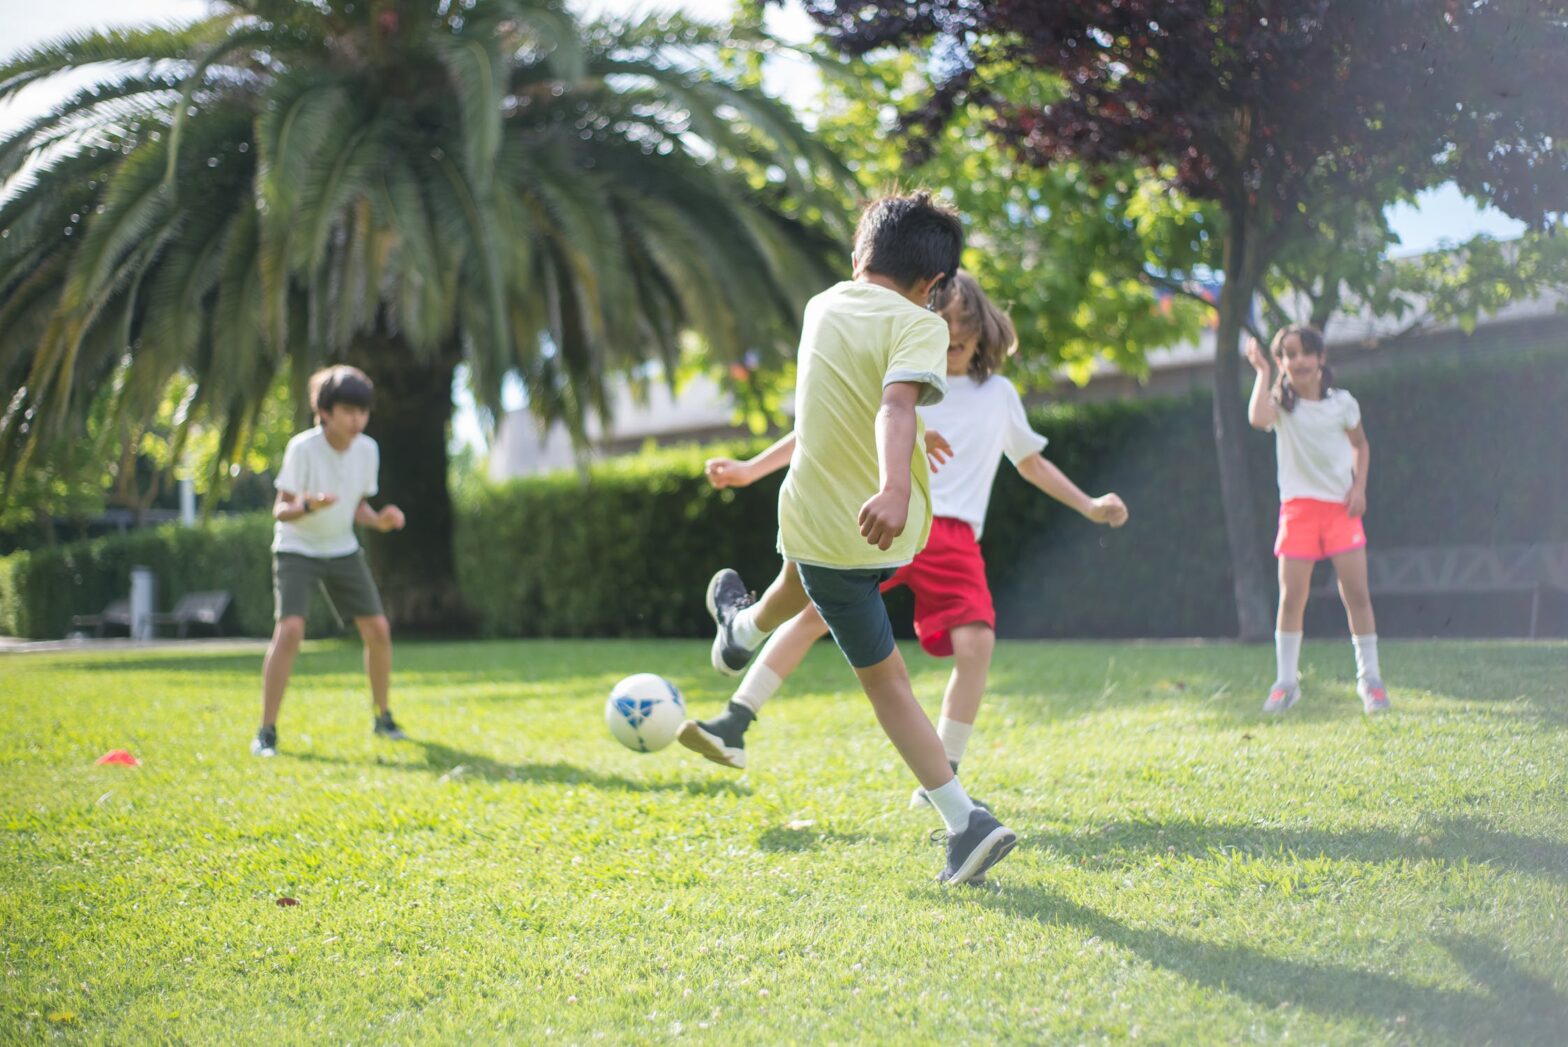 اللياقة البدنية: كيف تدعم تطور الأطفال  المعرفي والنفسي والاجتماعي؟